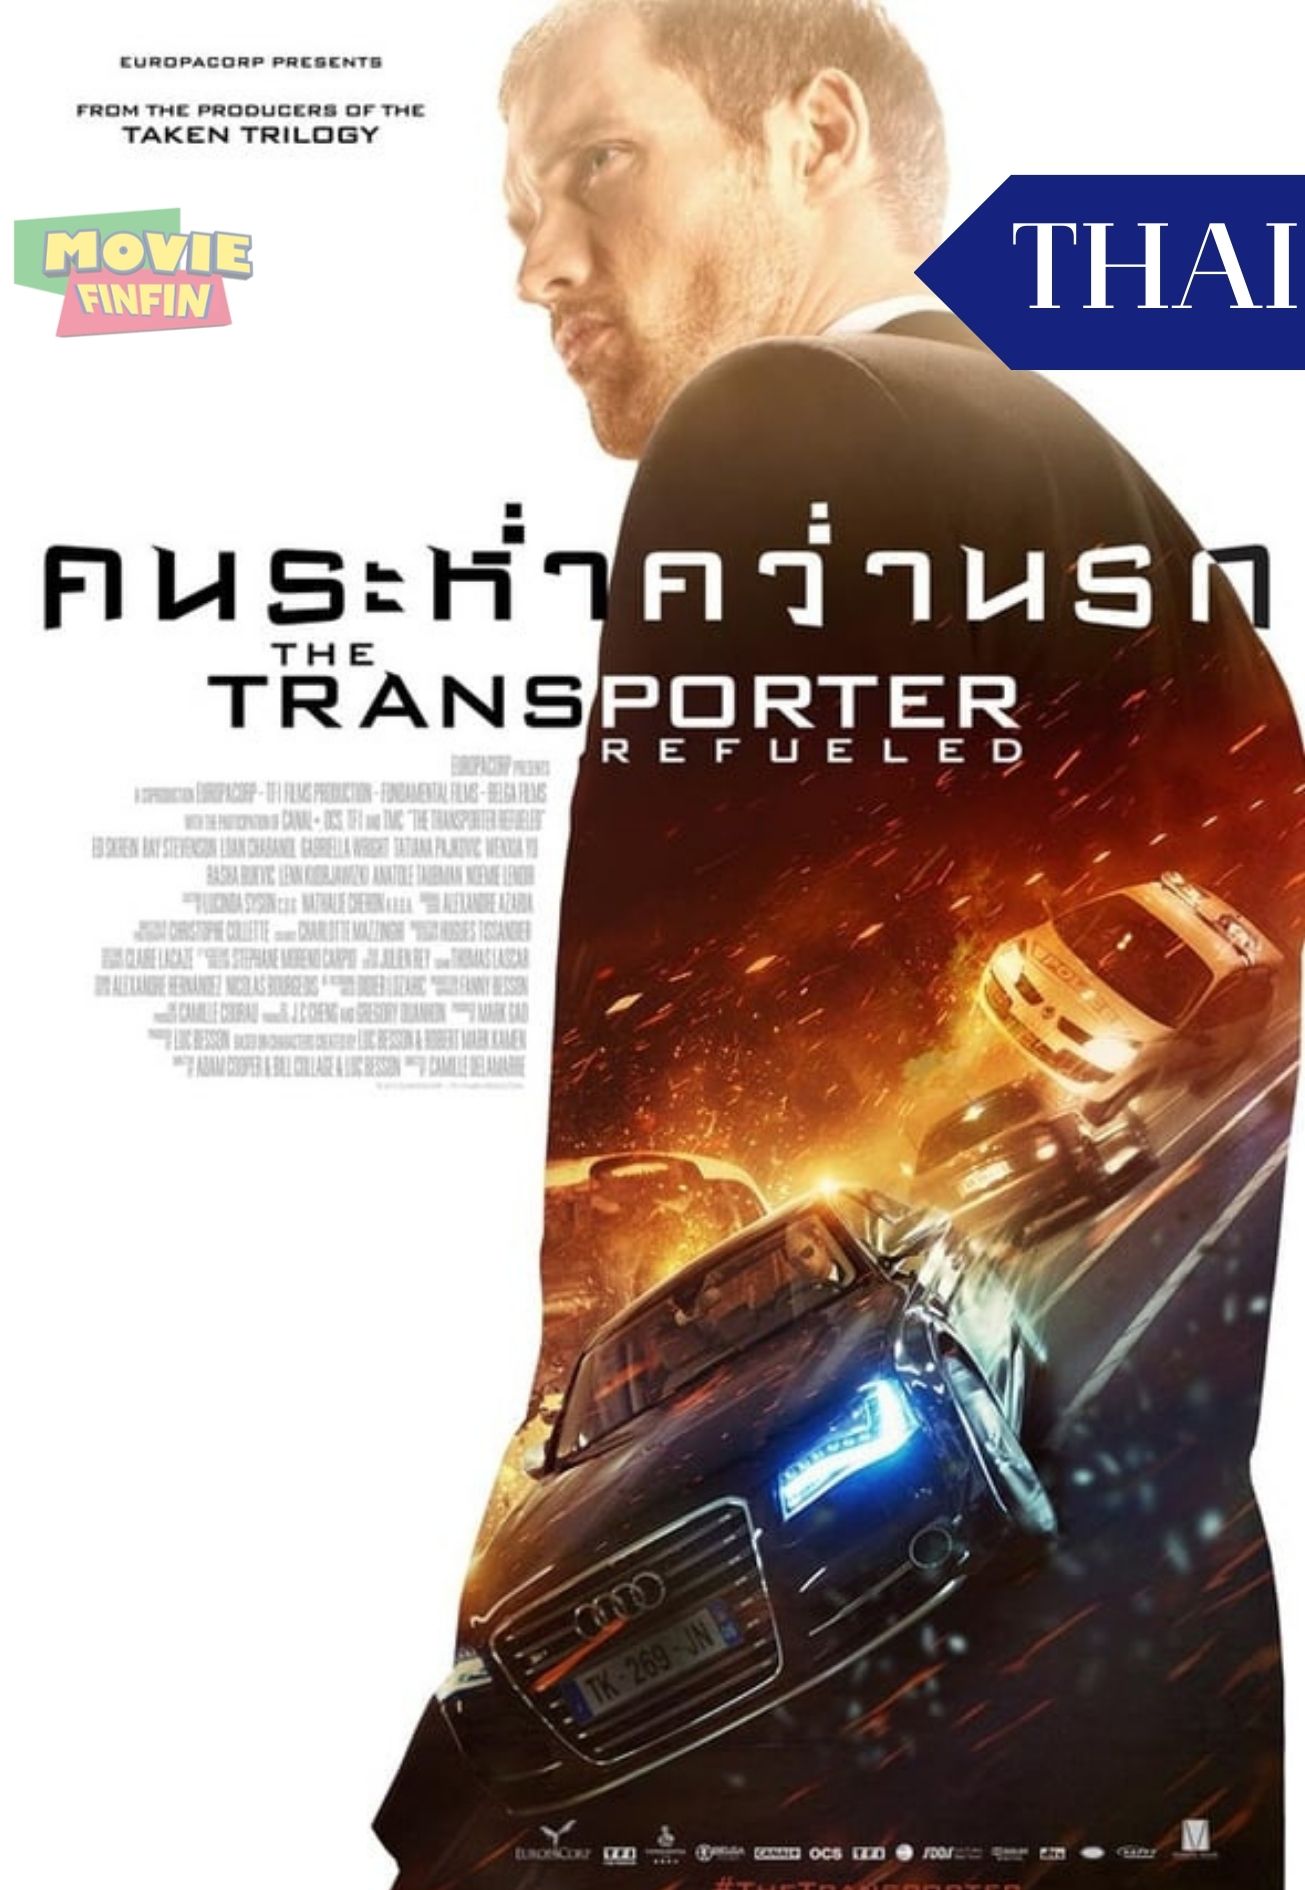 The Transporter Refueled (2015) ทรานสปอร์ตเตอร์ คนระห่ำคว่ำนรก 